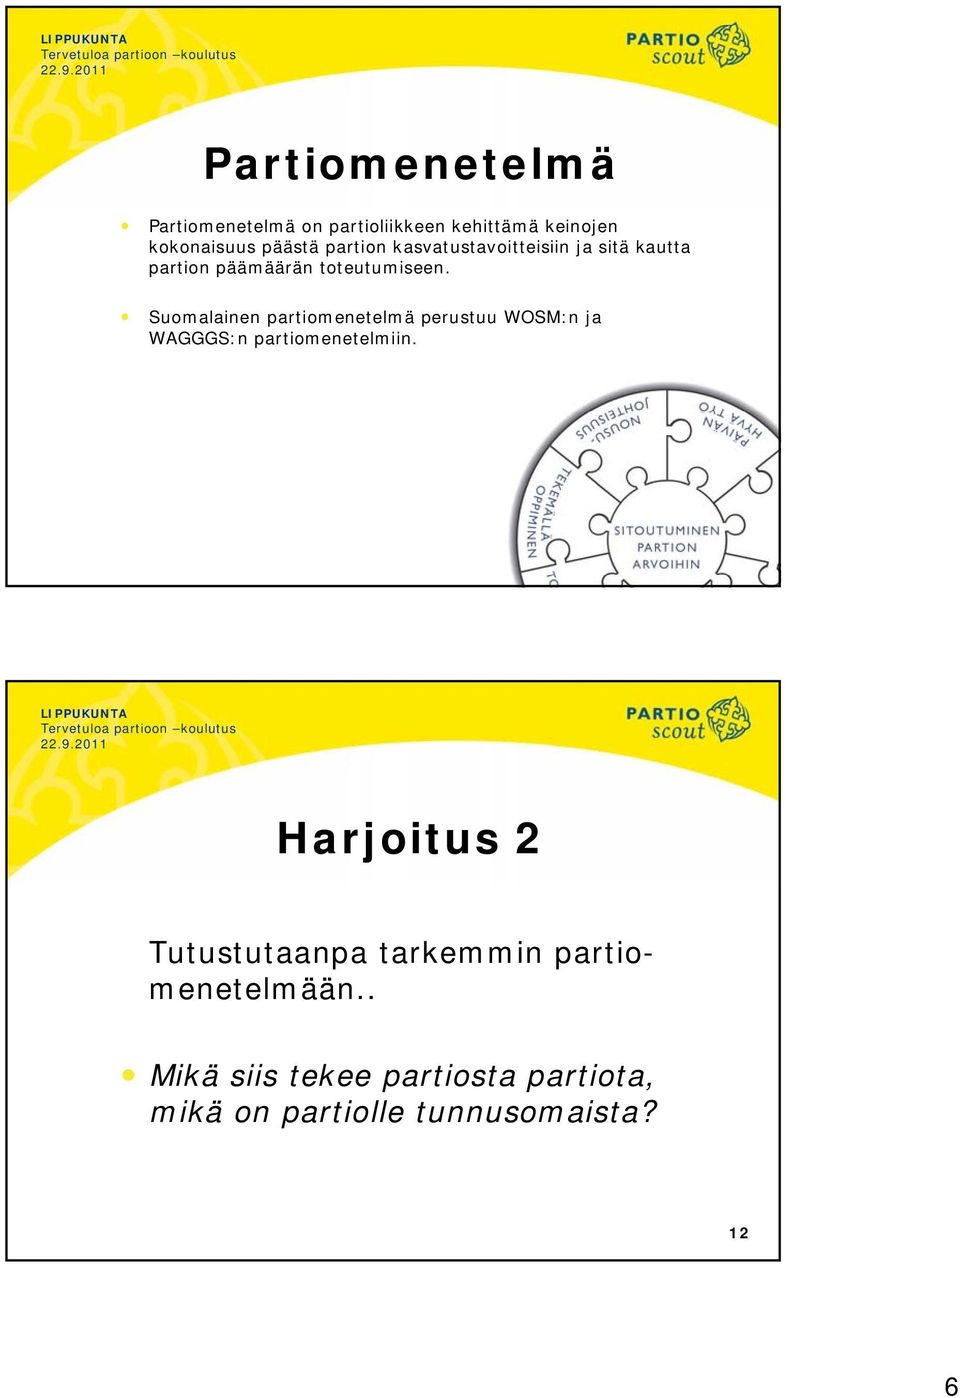 Suomalainen partiomenetelmä perustuu WOSM:n ja WAGGGS:n partiomenetelmiin.